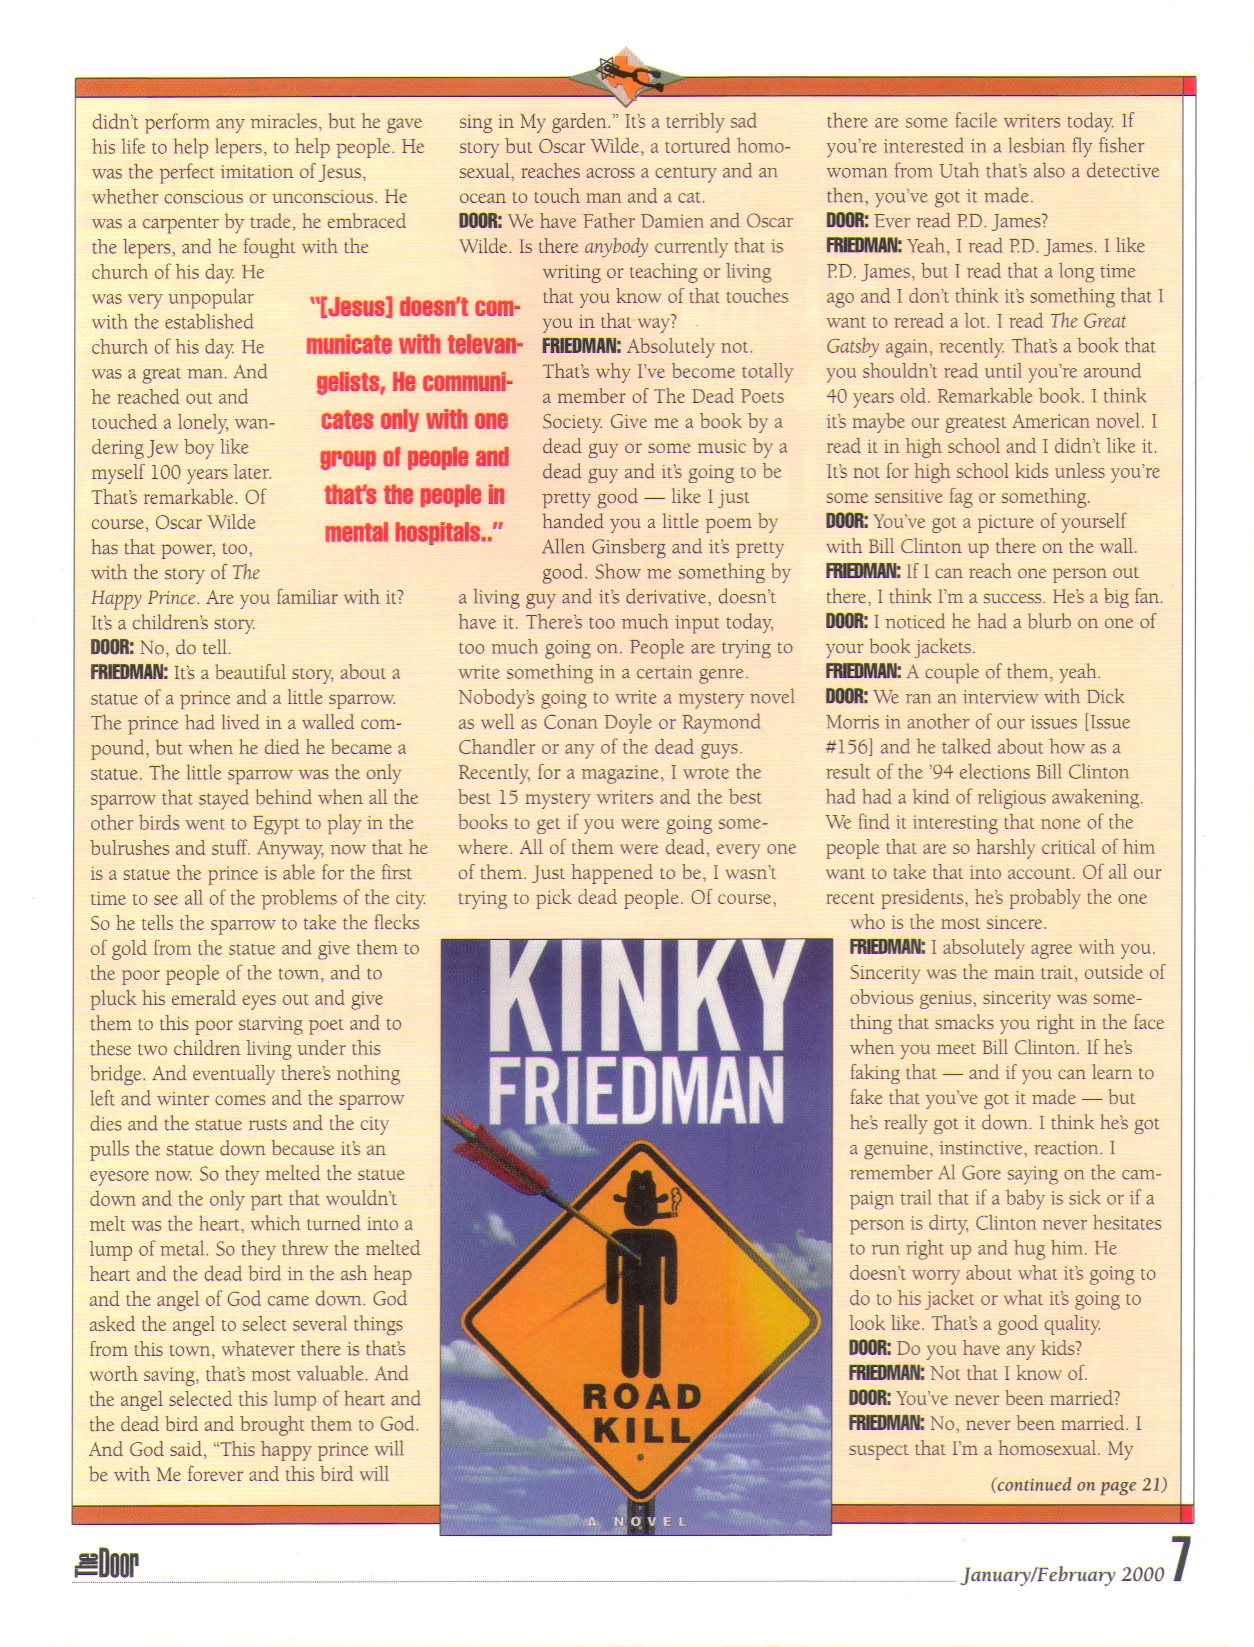 Kinky Friedman